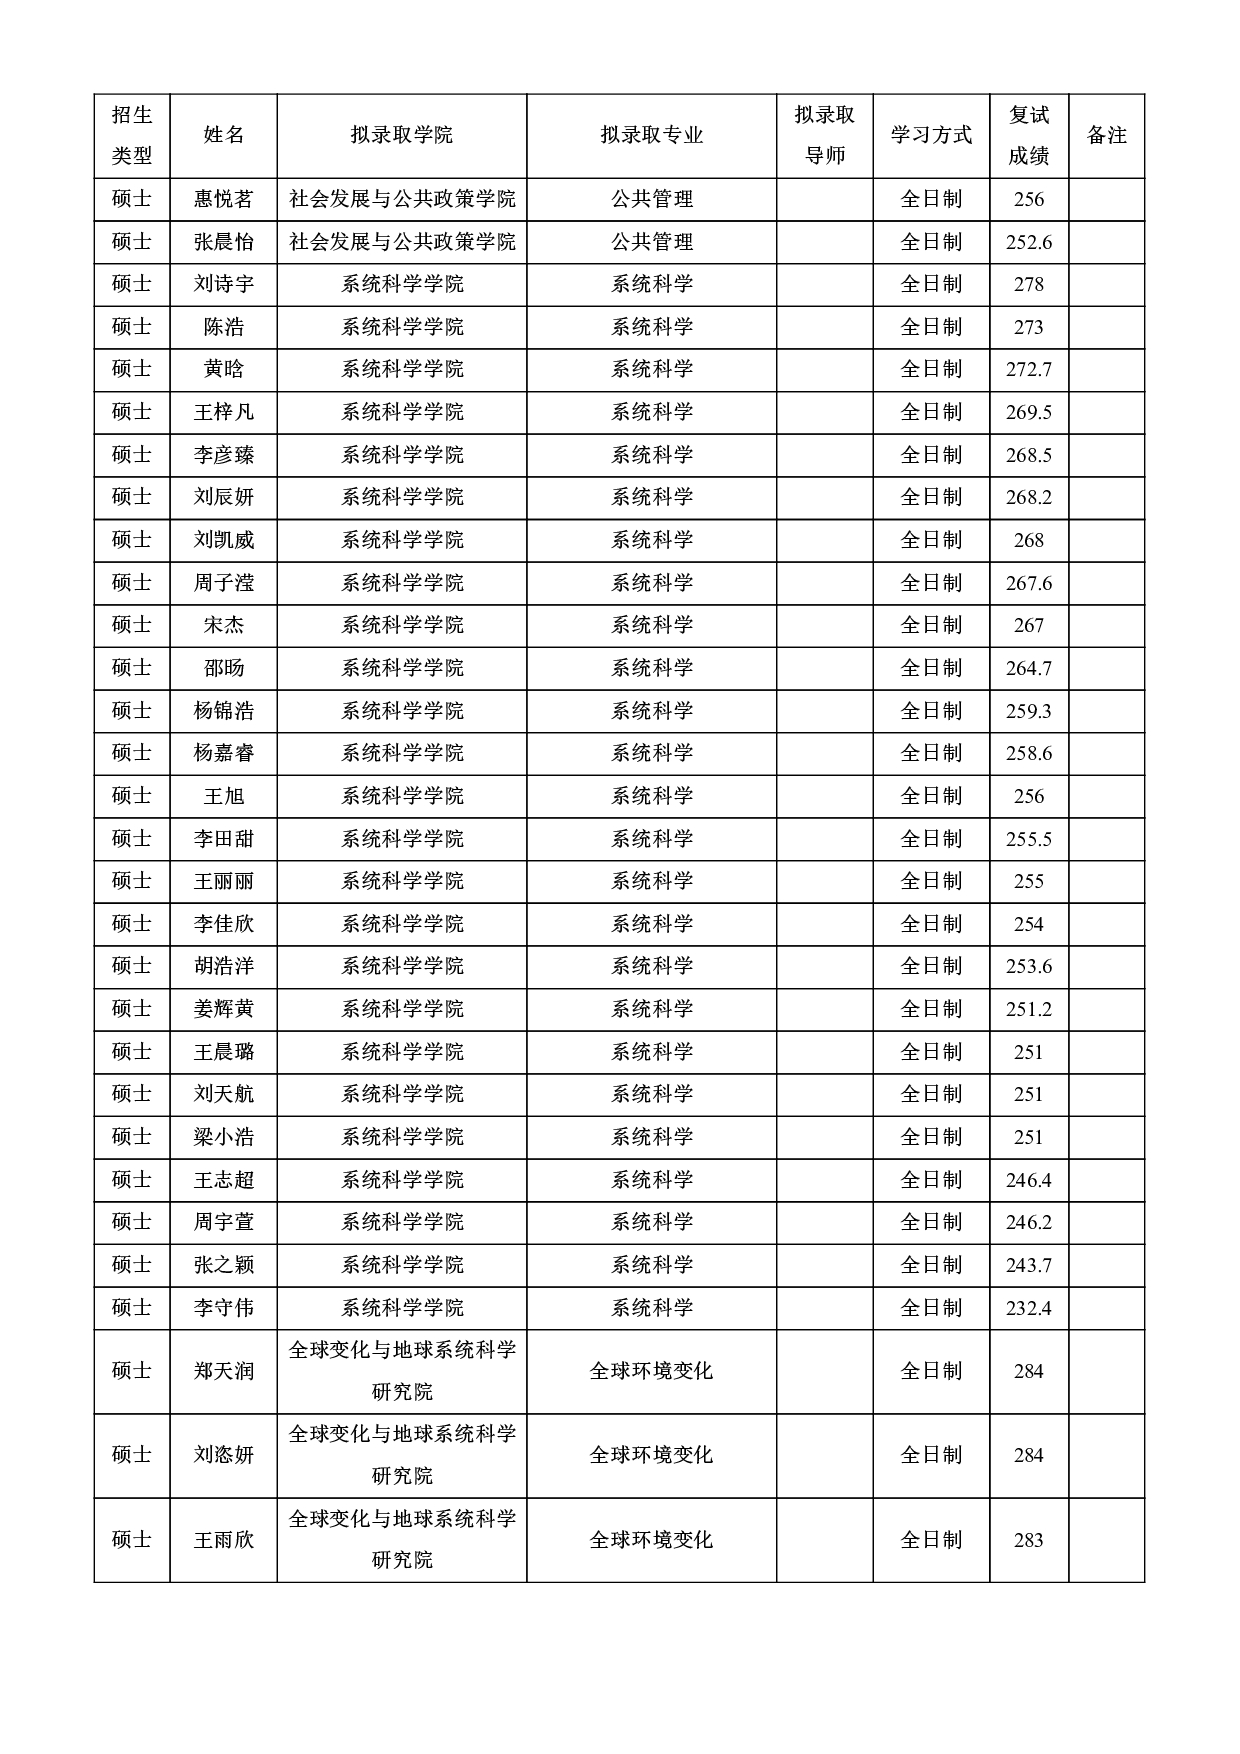 2022考研拟录取名单：北京师范大学2022年接收推荐免试攻读研究生拟录取名单第33页